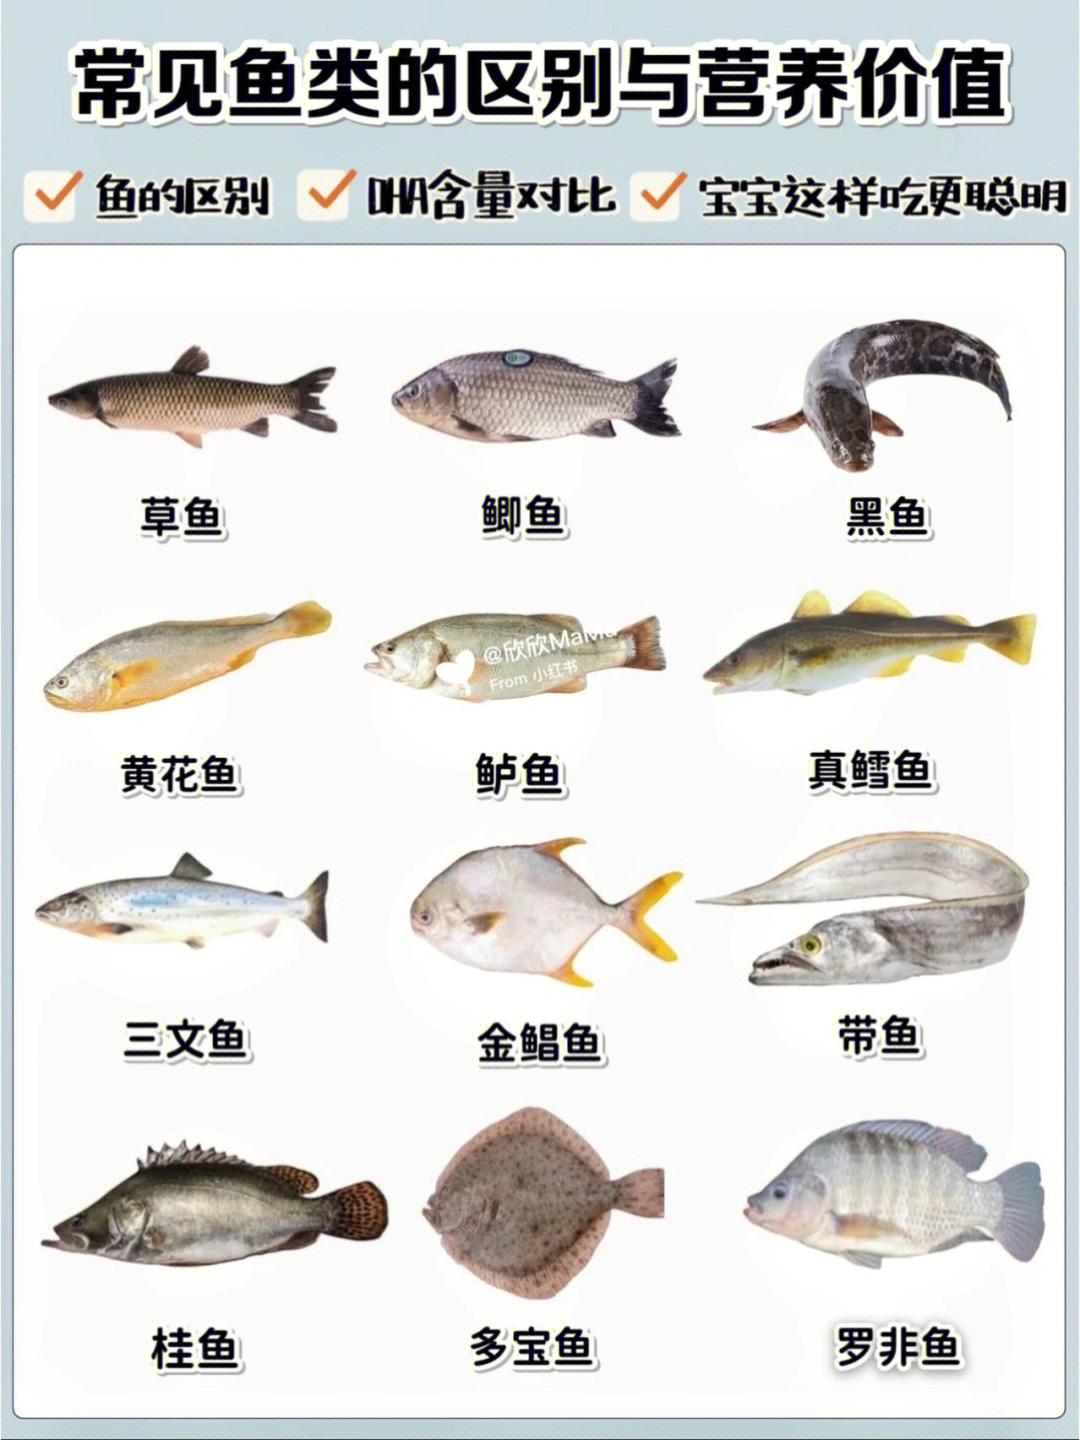 食用鱼的名称和图片图片